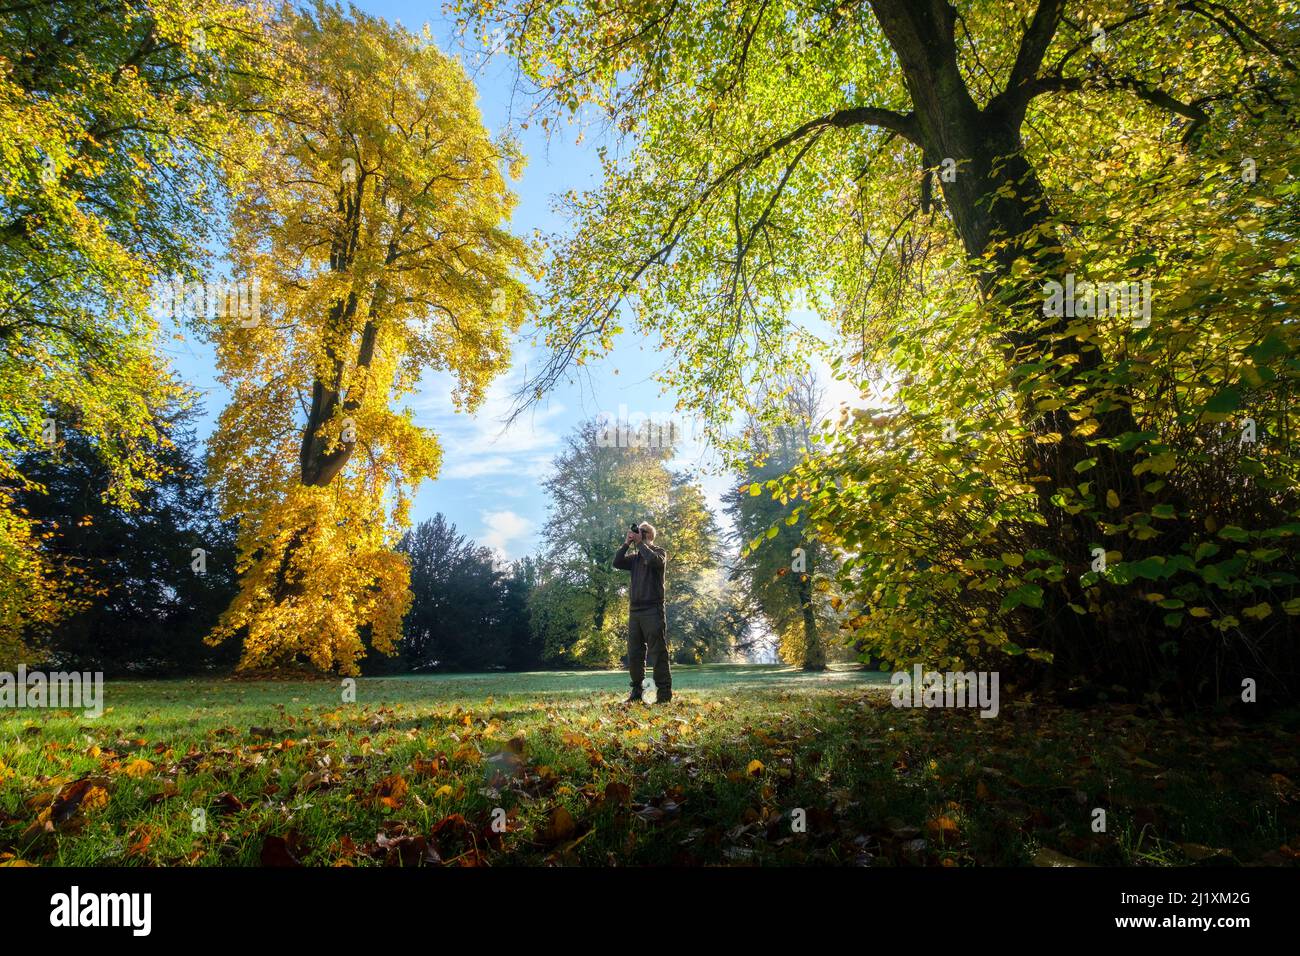 Westonbirt, Royaume-Uni. L'arboretum national de Westonbirt, où les arbres se sont transformés à des couleurs automnales étonnantes et où les membres du public aiment marcher et prendre des photos sous le soleil lumineux du matin. Banque D'Images